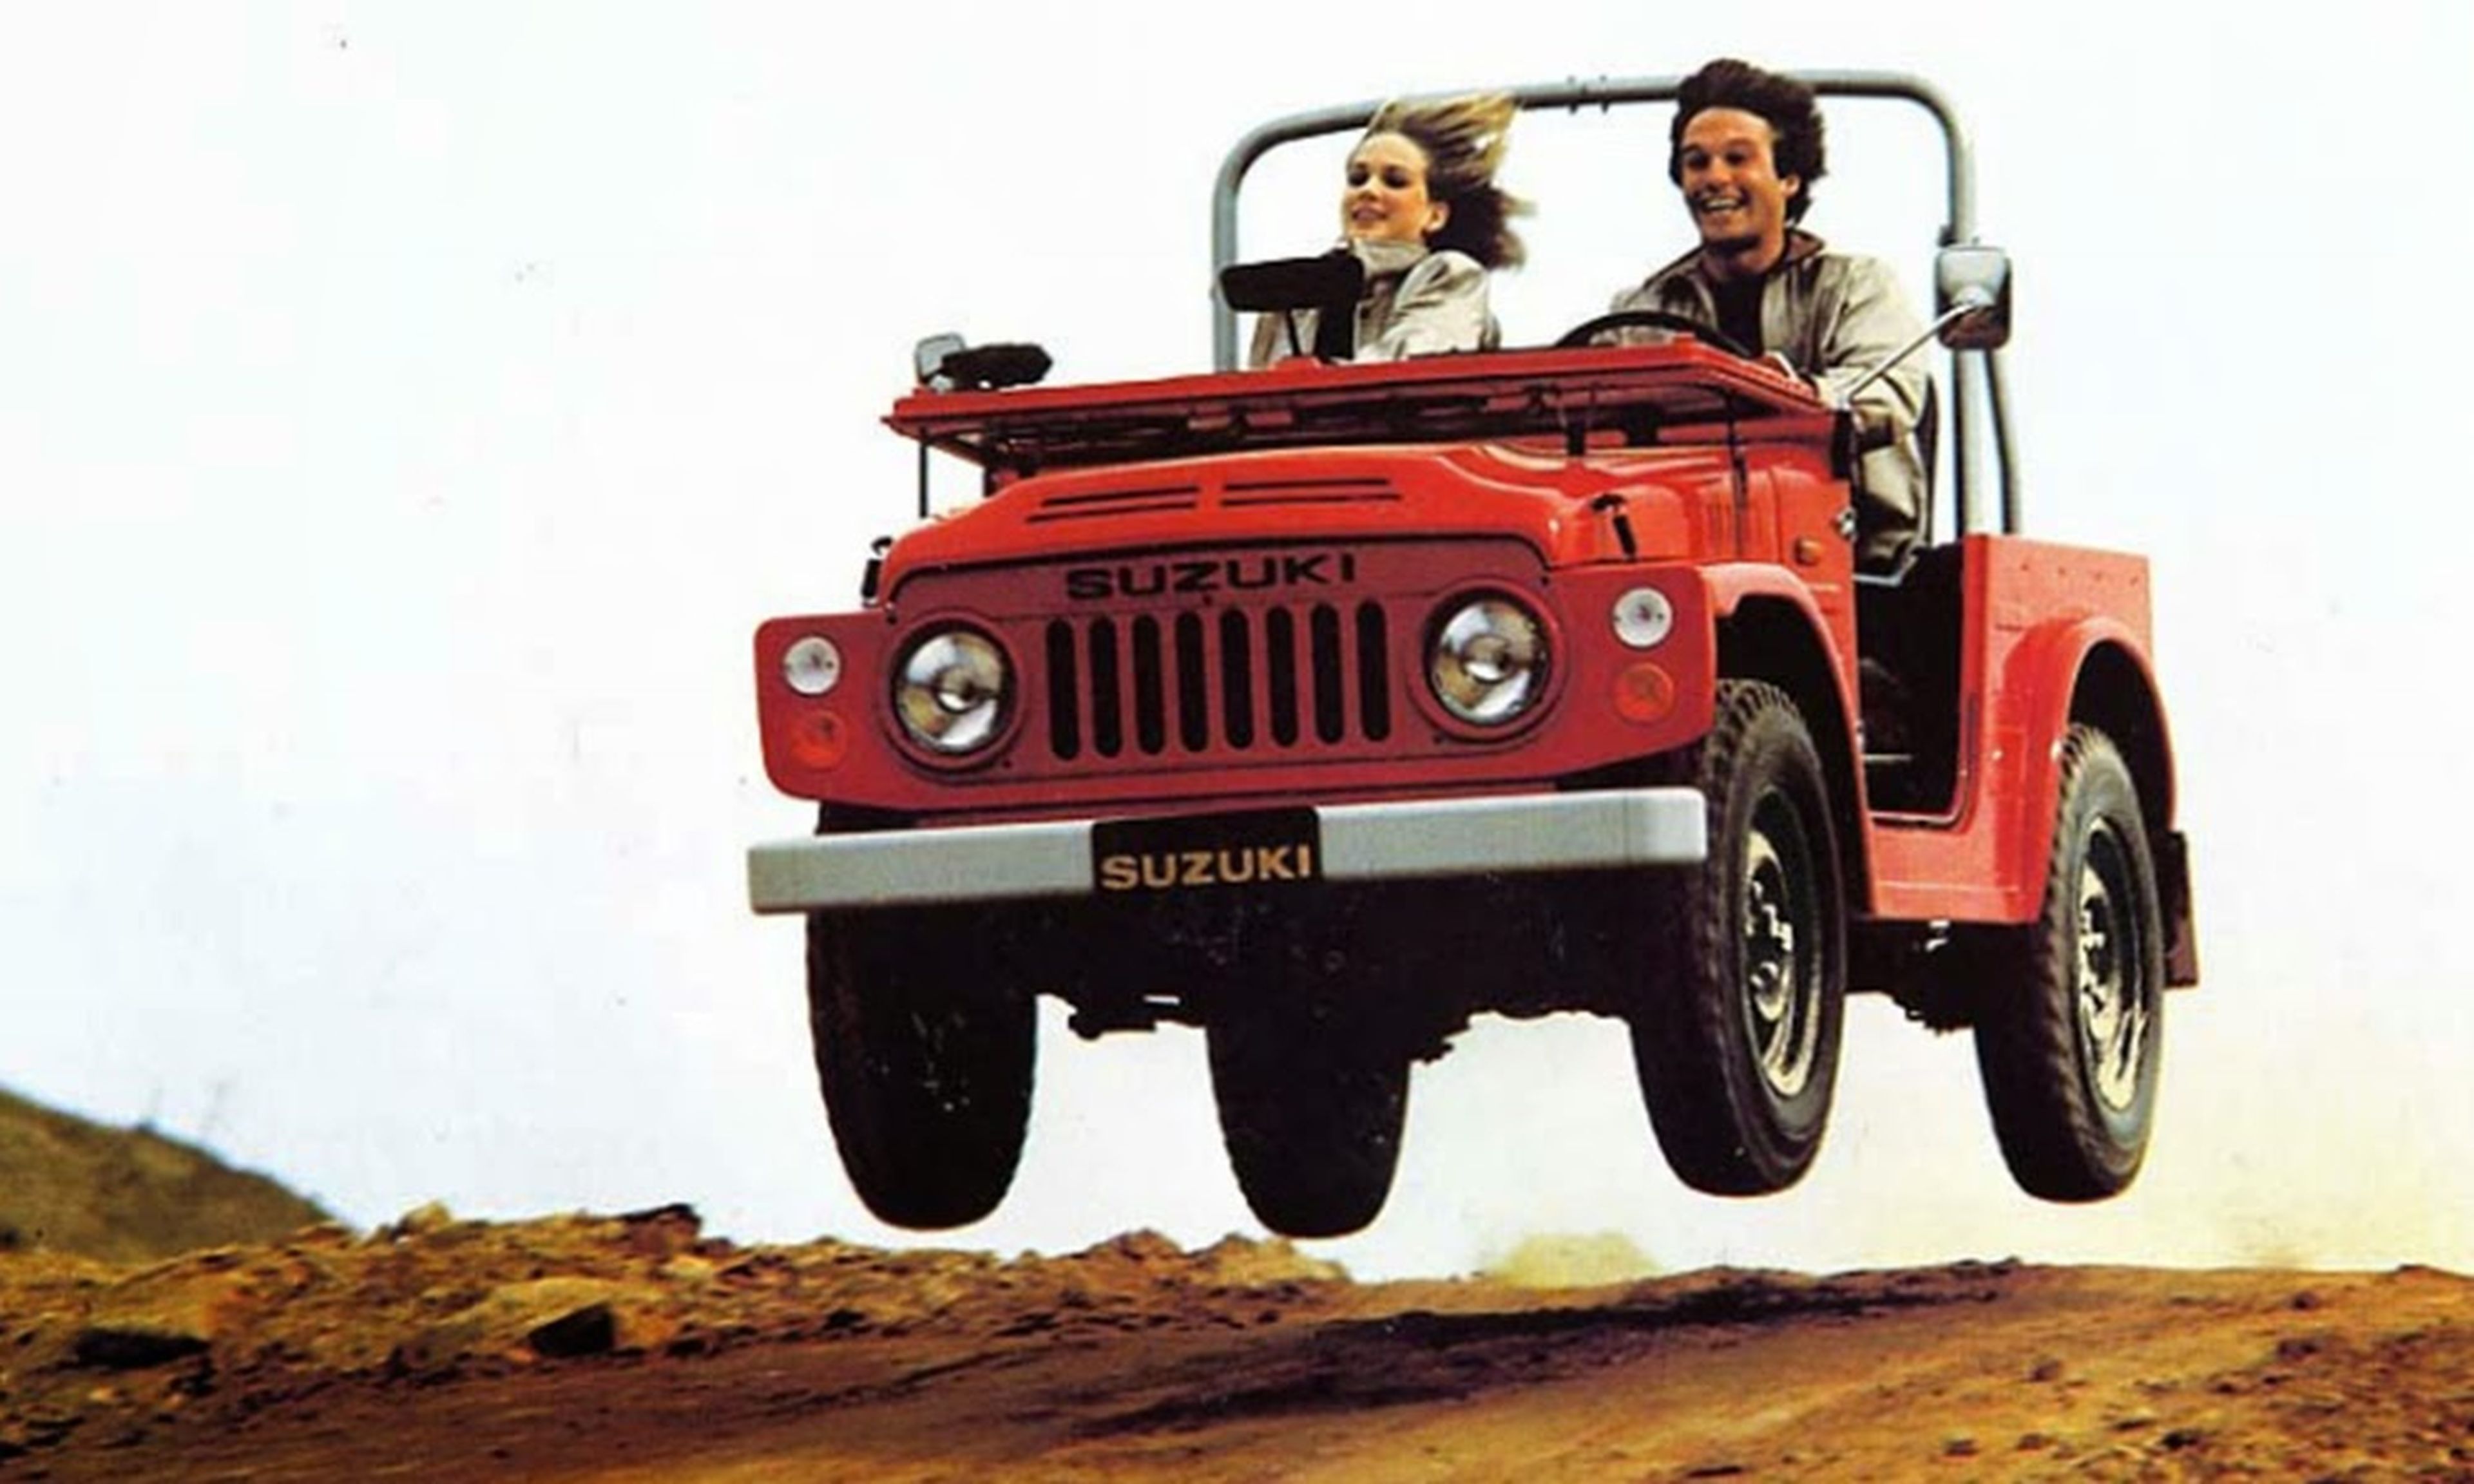 El Suzuki Jimny fue el primer 4x4 de la marca